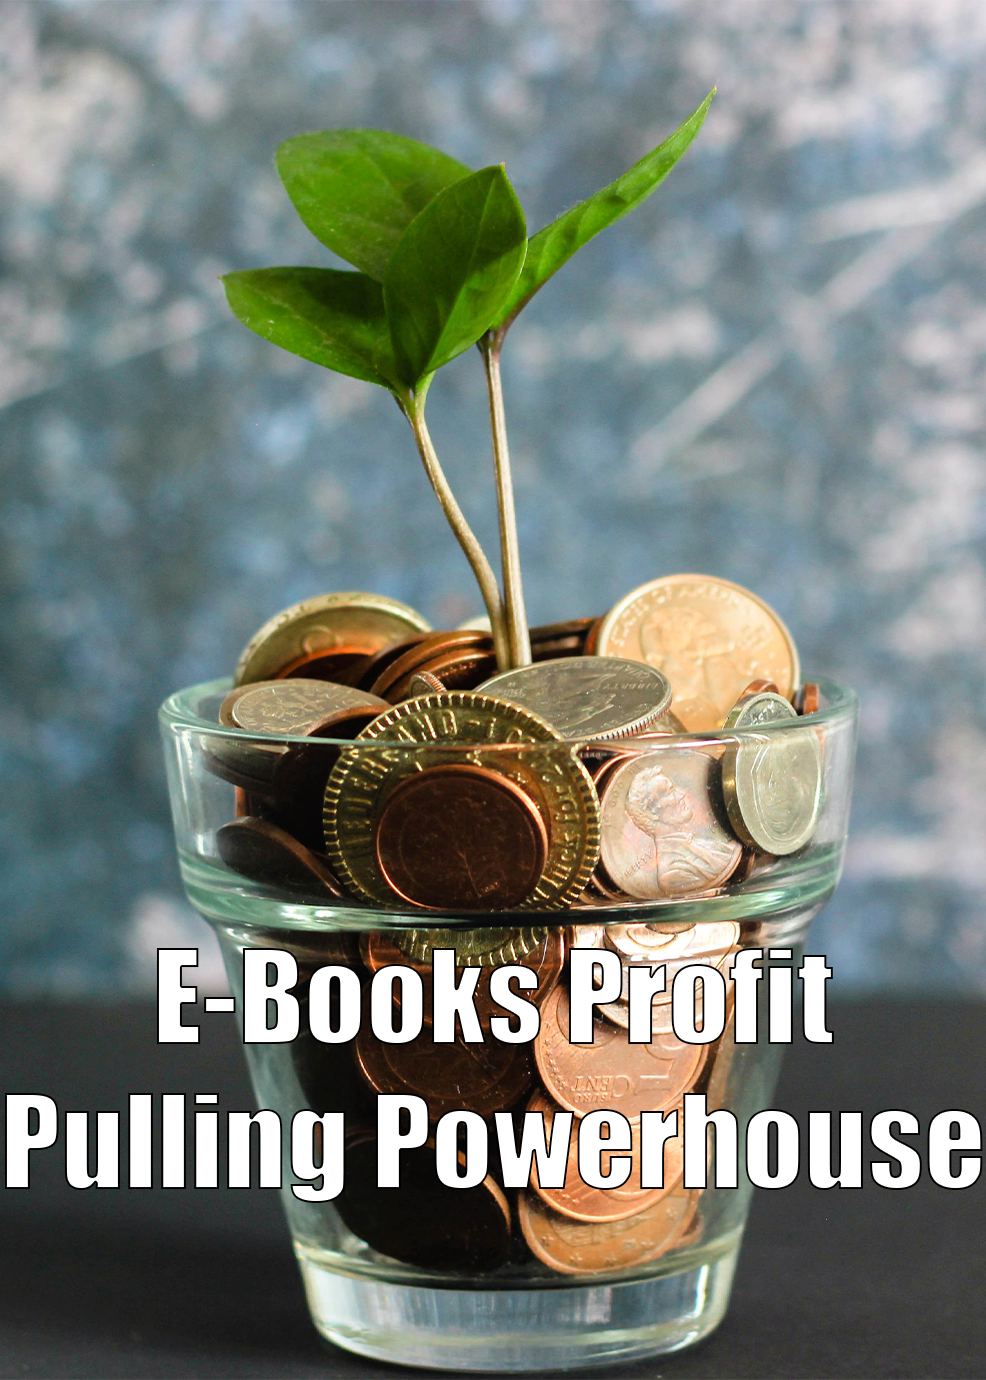 E-Books Profit Pulling Powerhouse